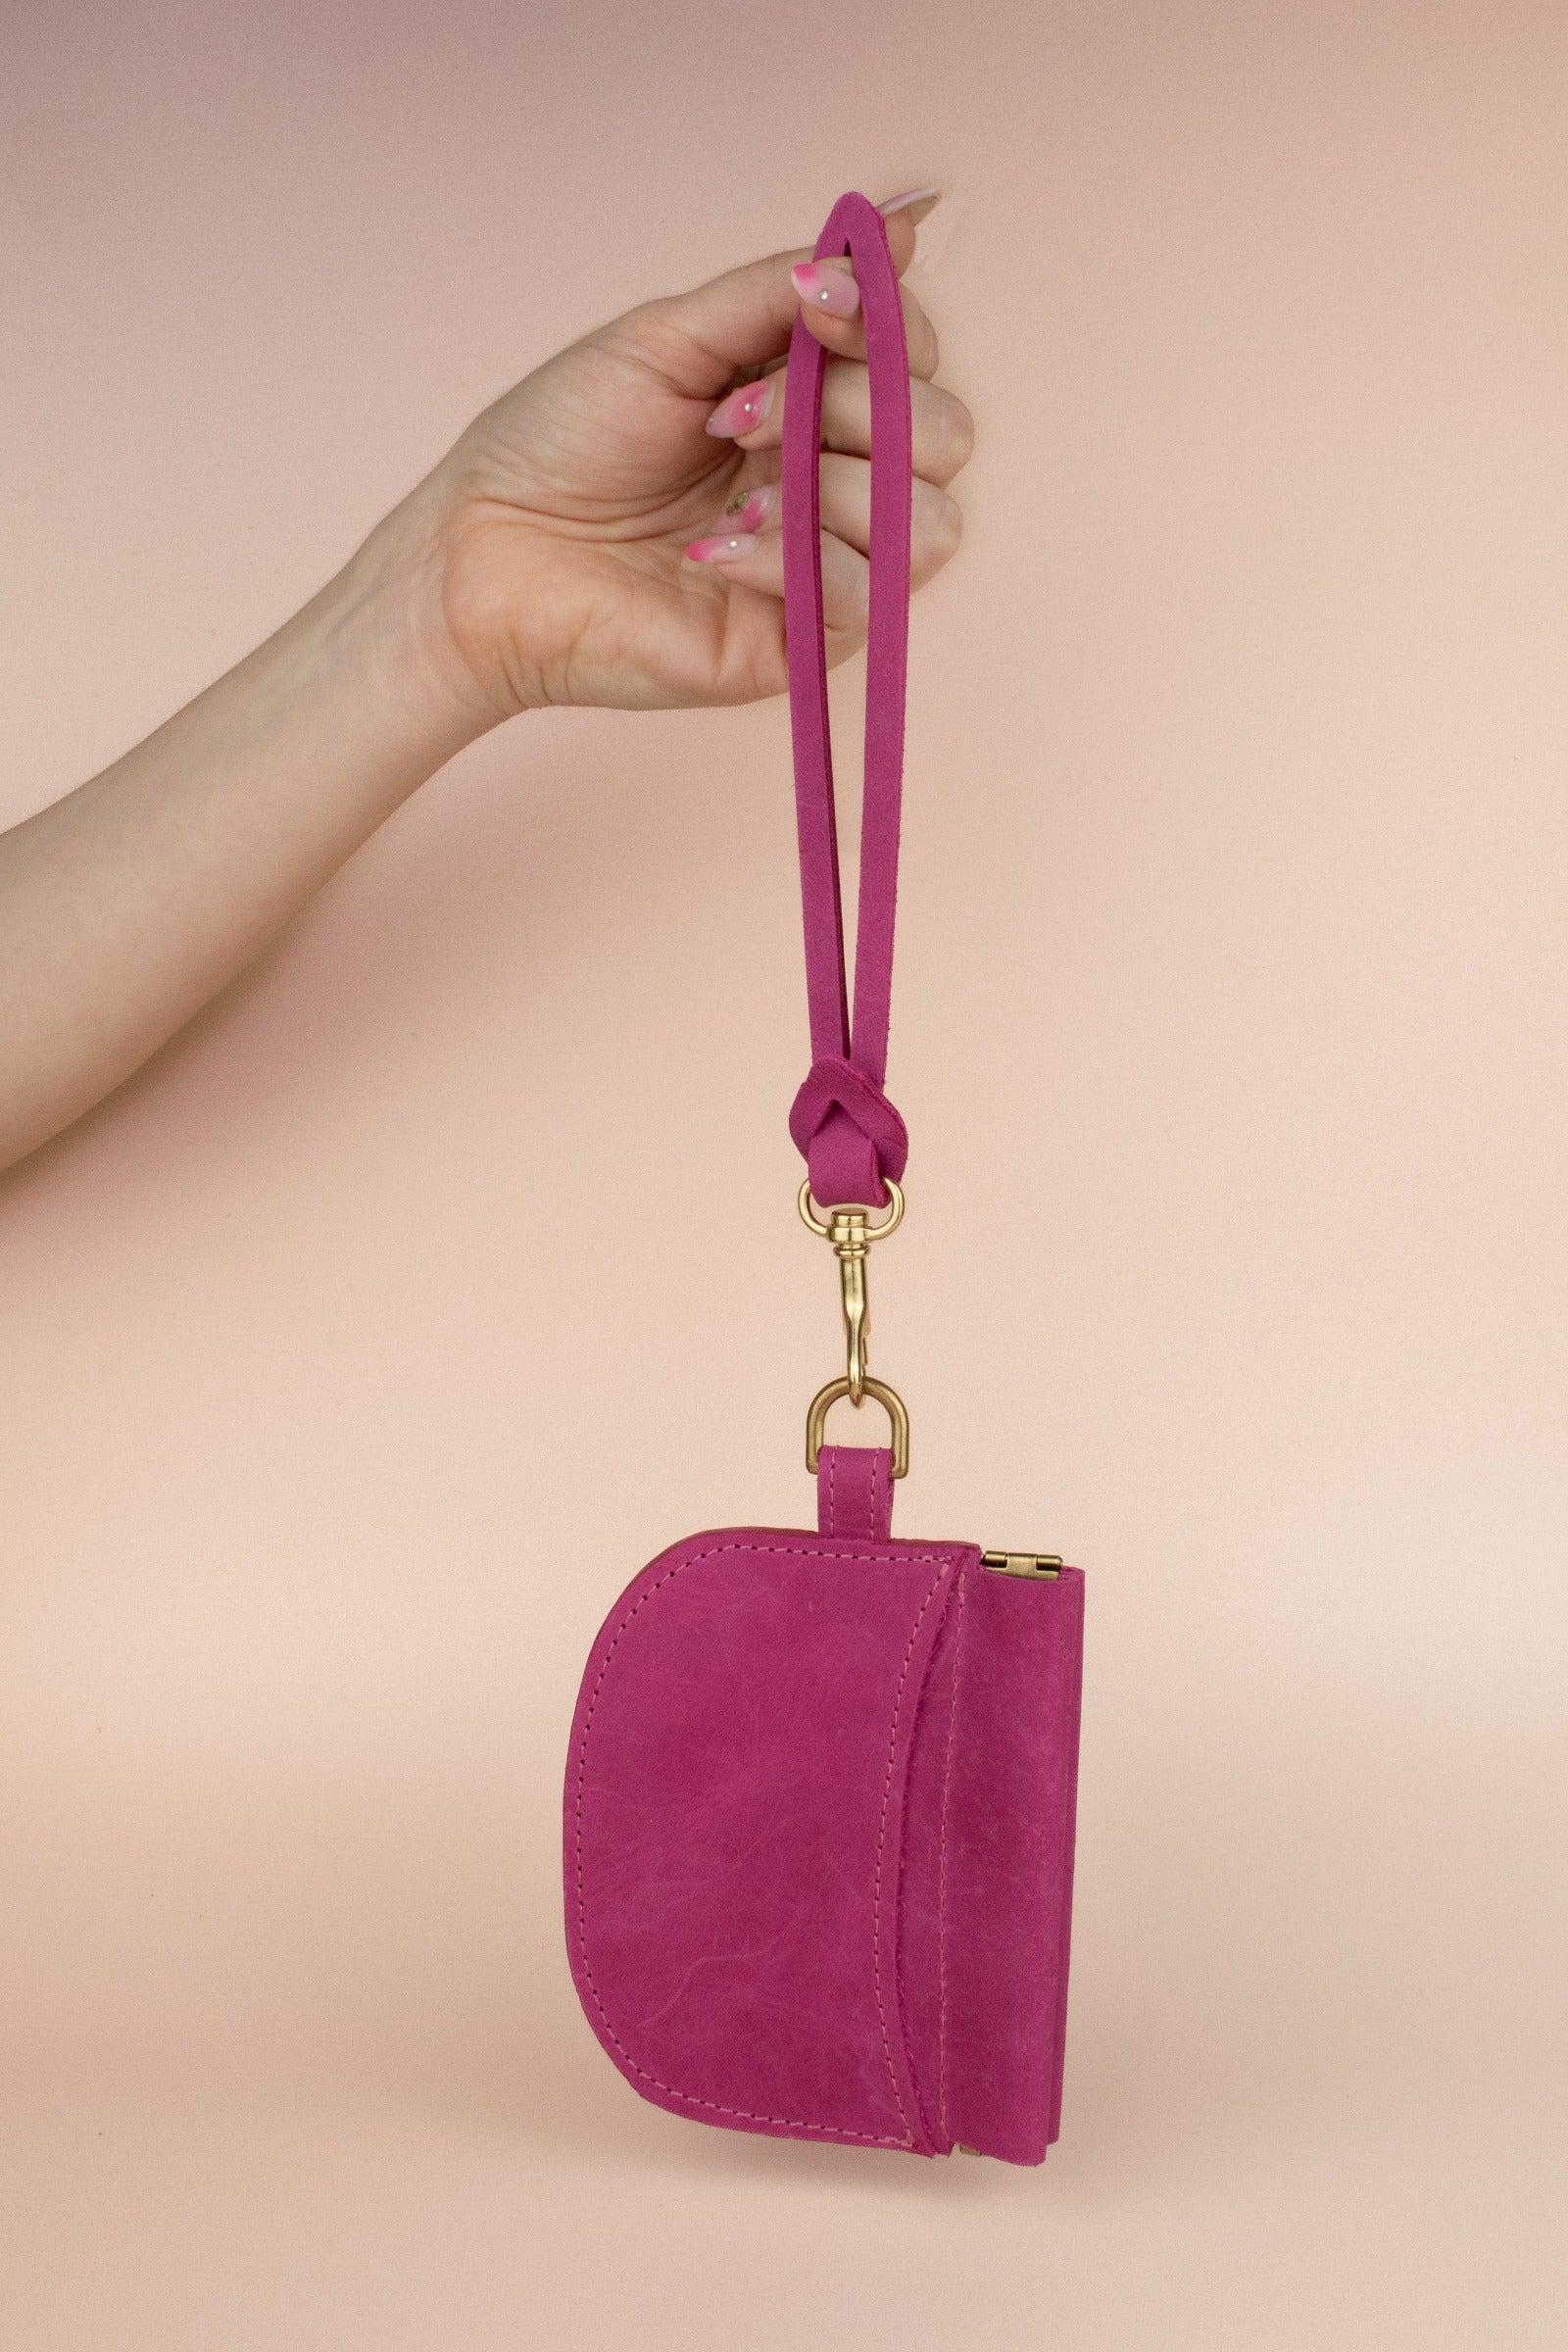 magenta pink slim modern cardholder nubuck leather wristlet keychain gift for her